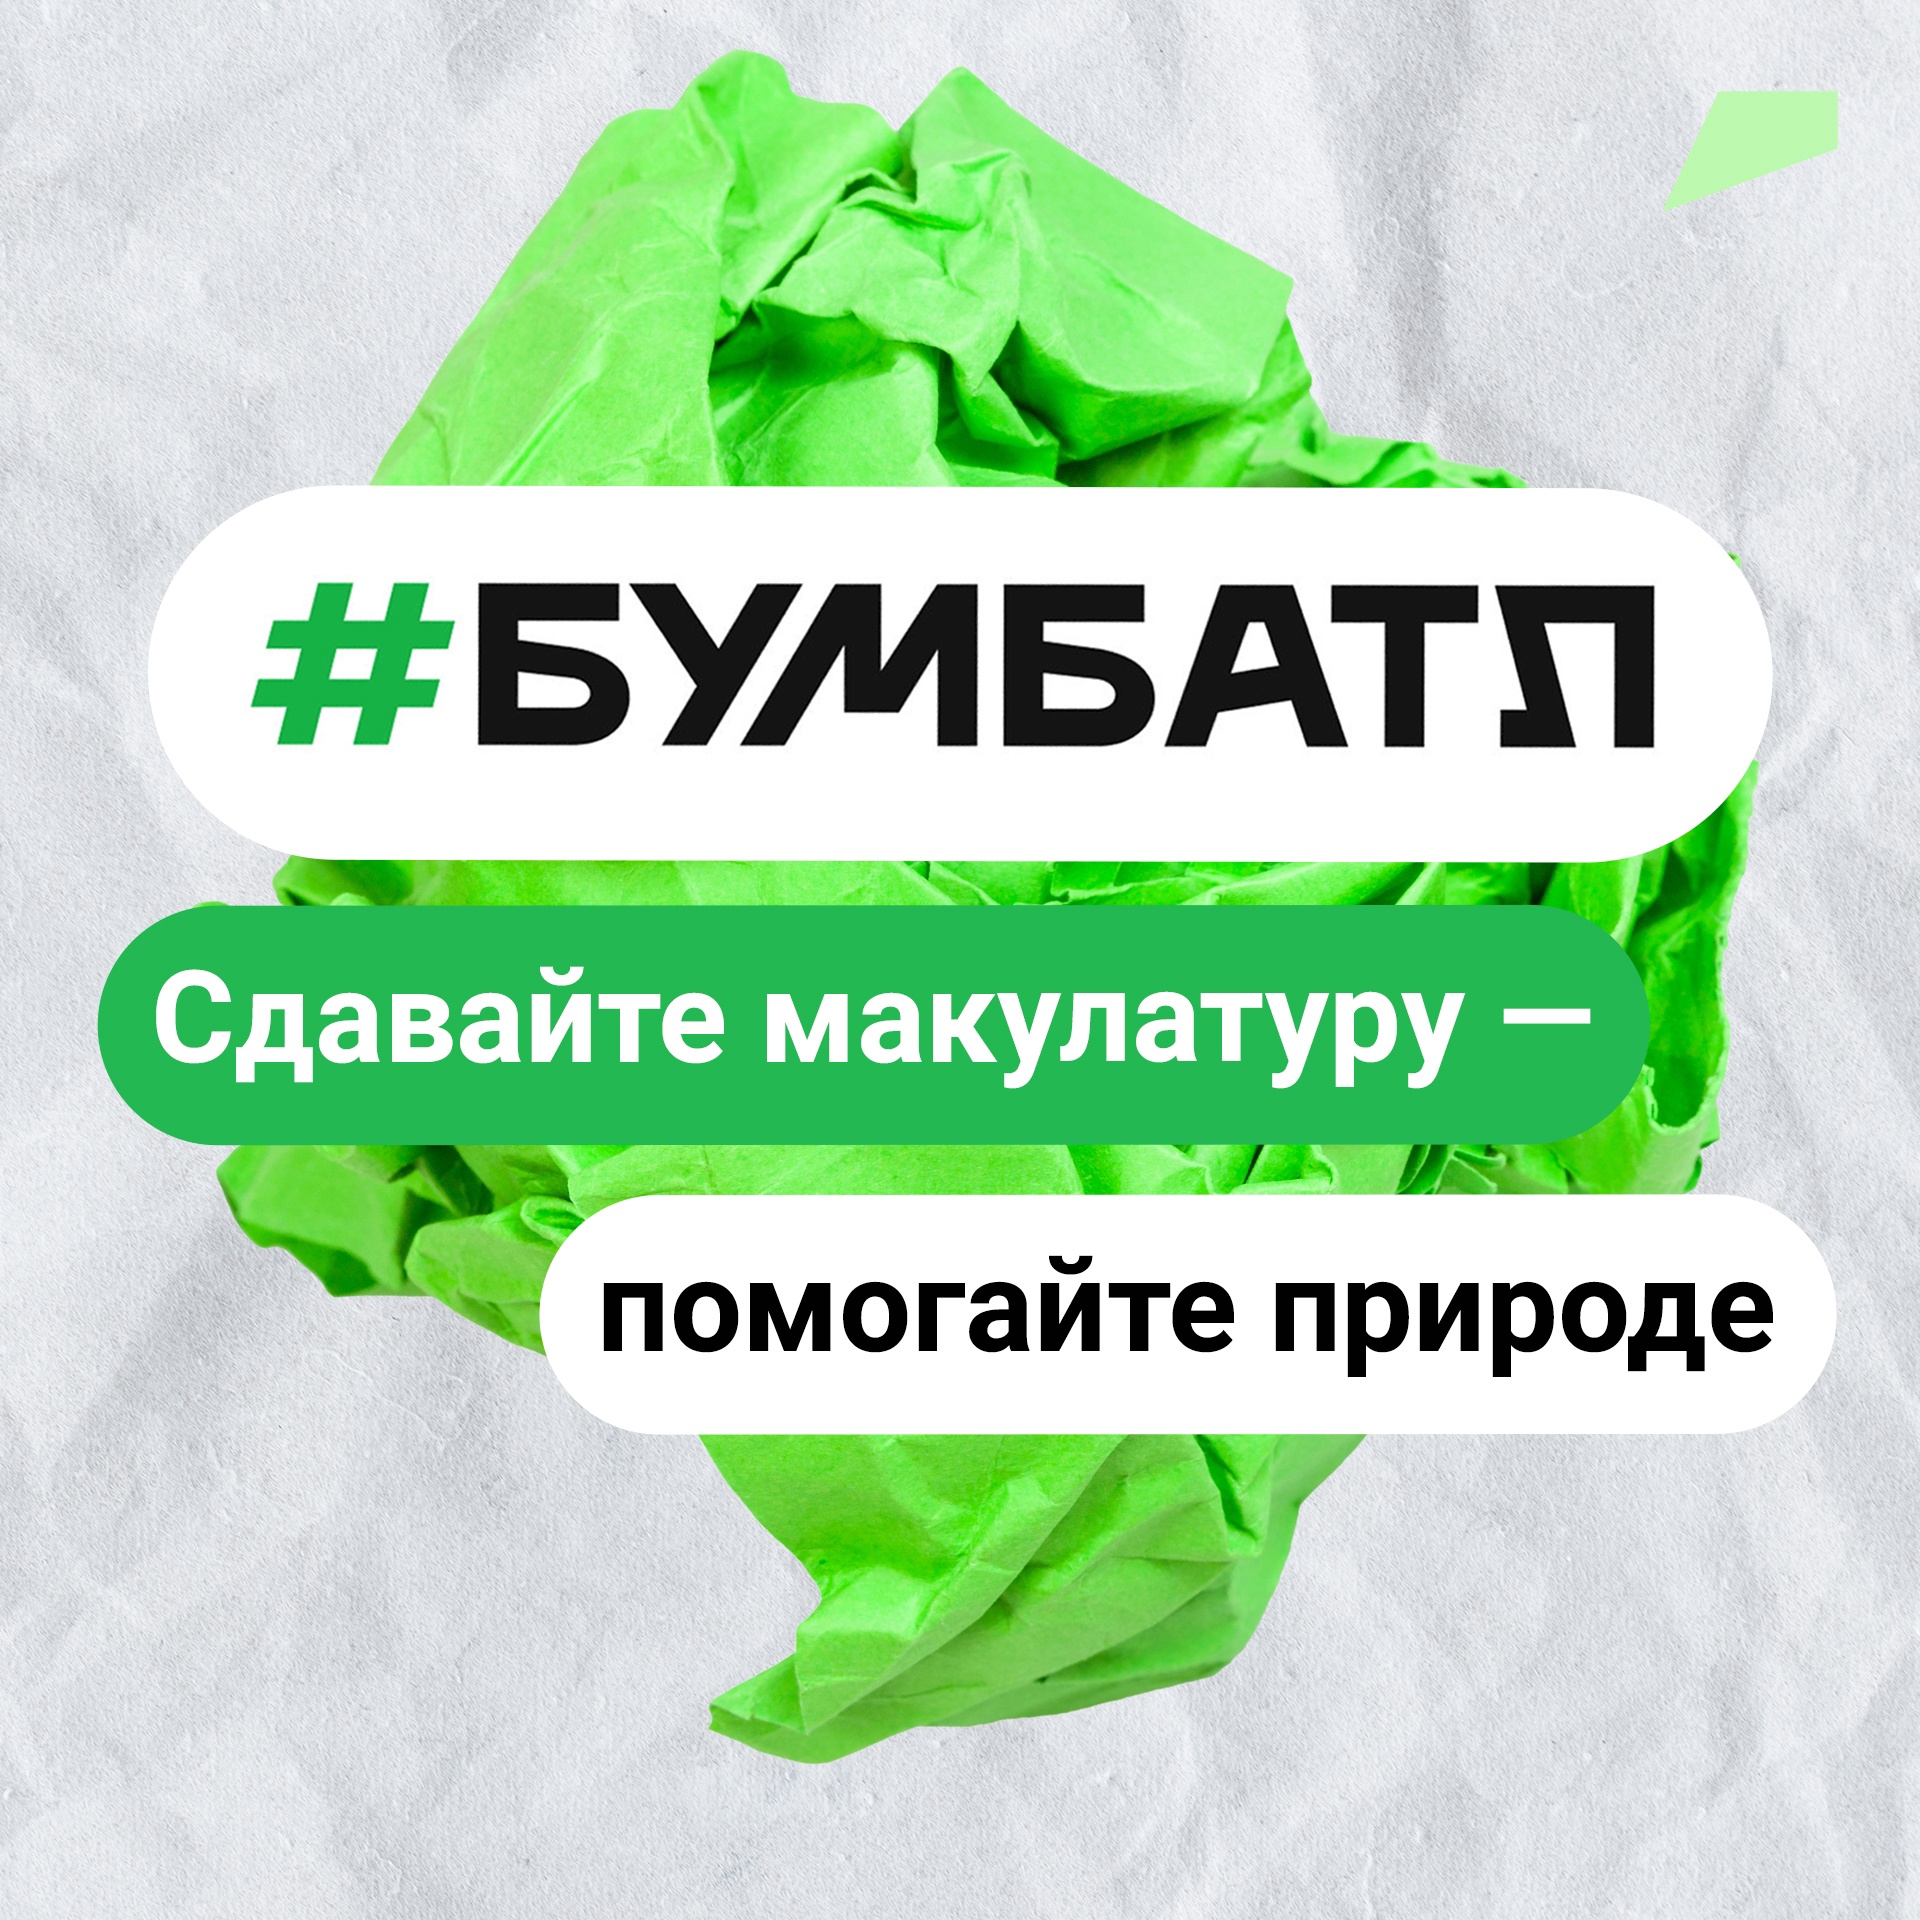 В рамках «БумБатла» в Белгородской области ко Всемирному дню без бумаги собрали 5,6 тонн макулатуры.